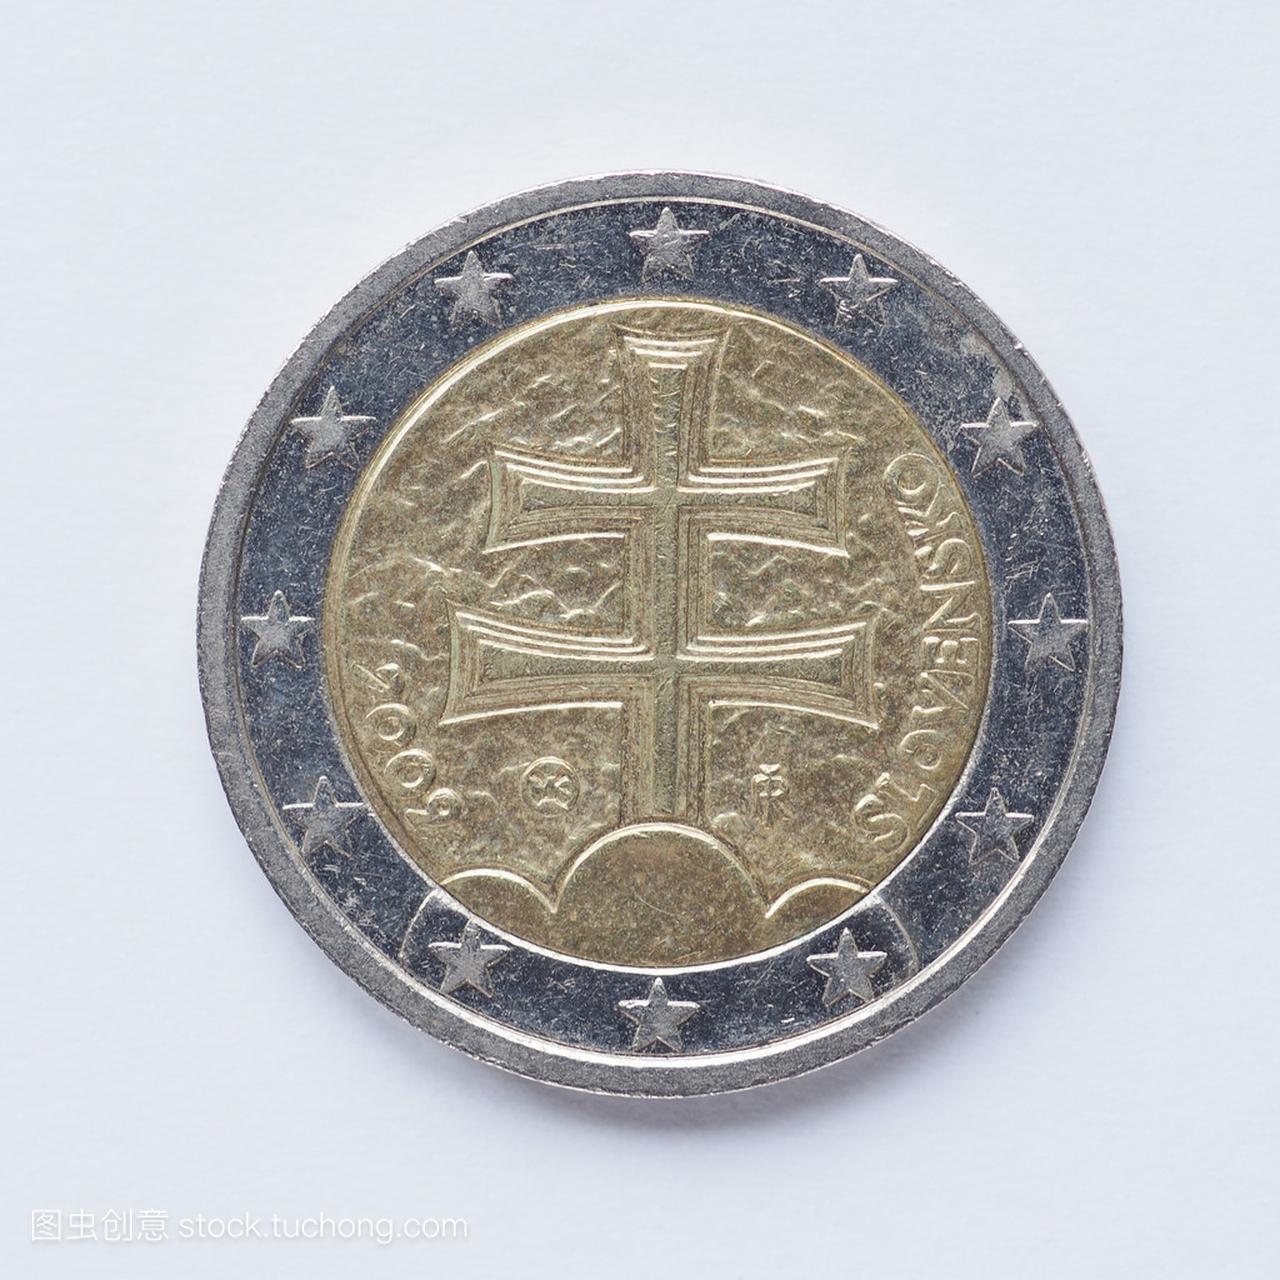 斯洛伐克 2 欧元硬币